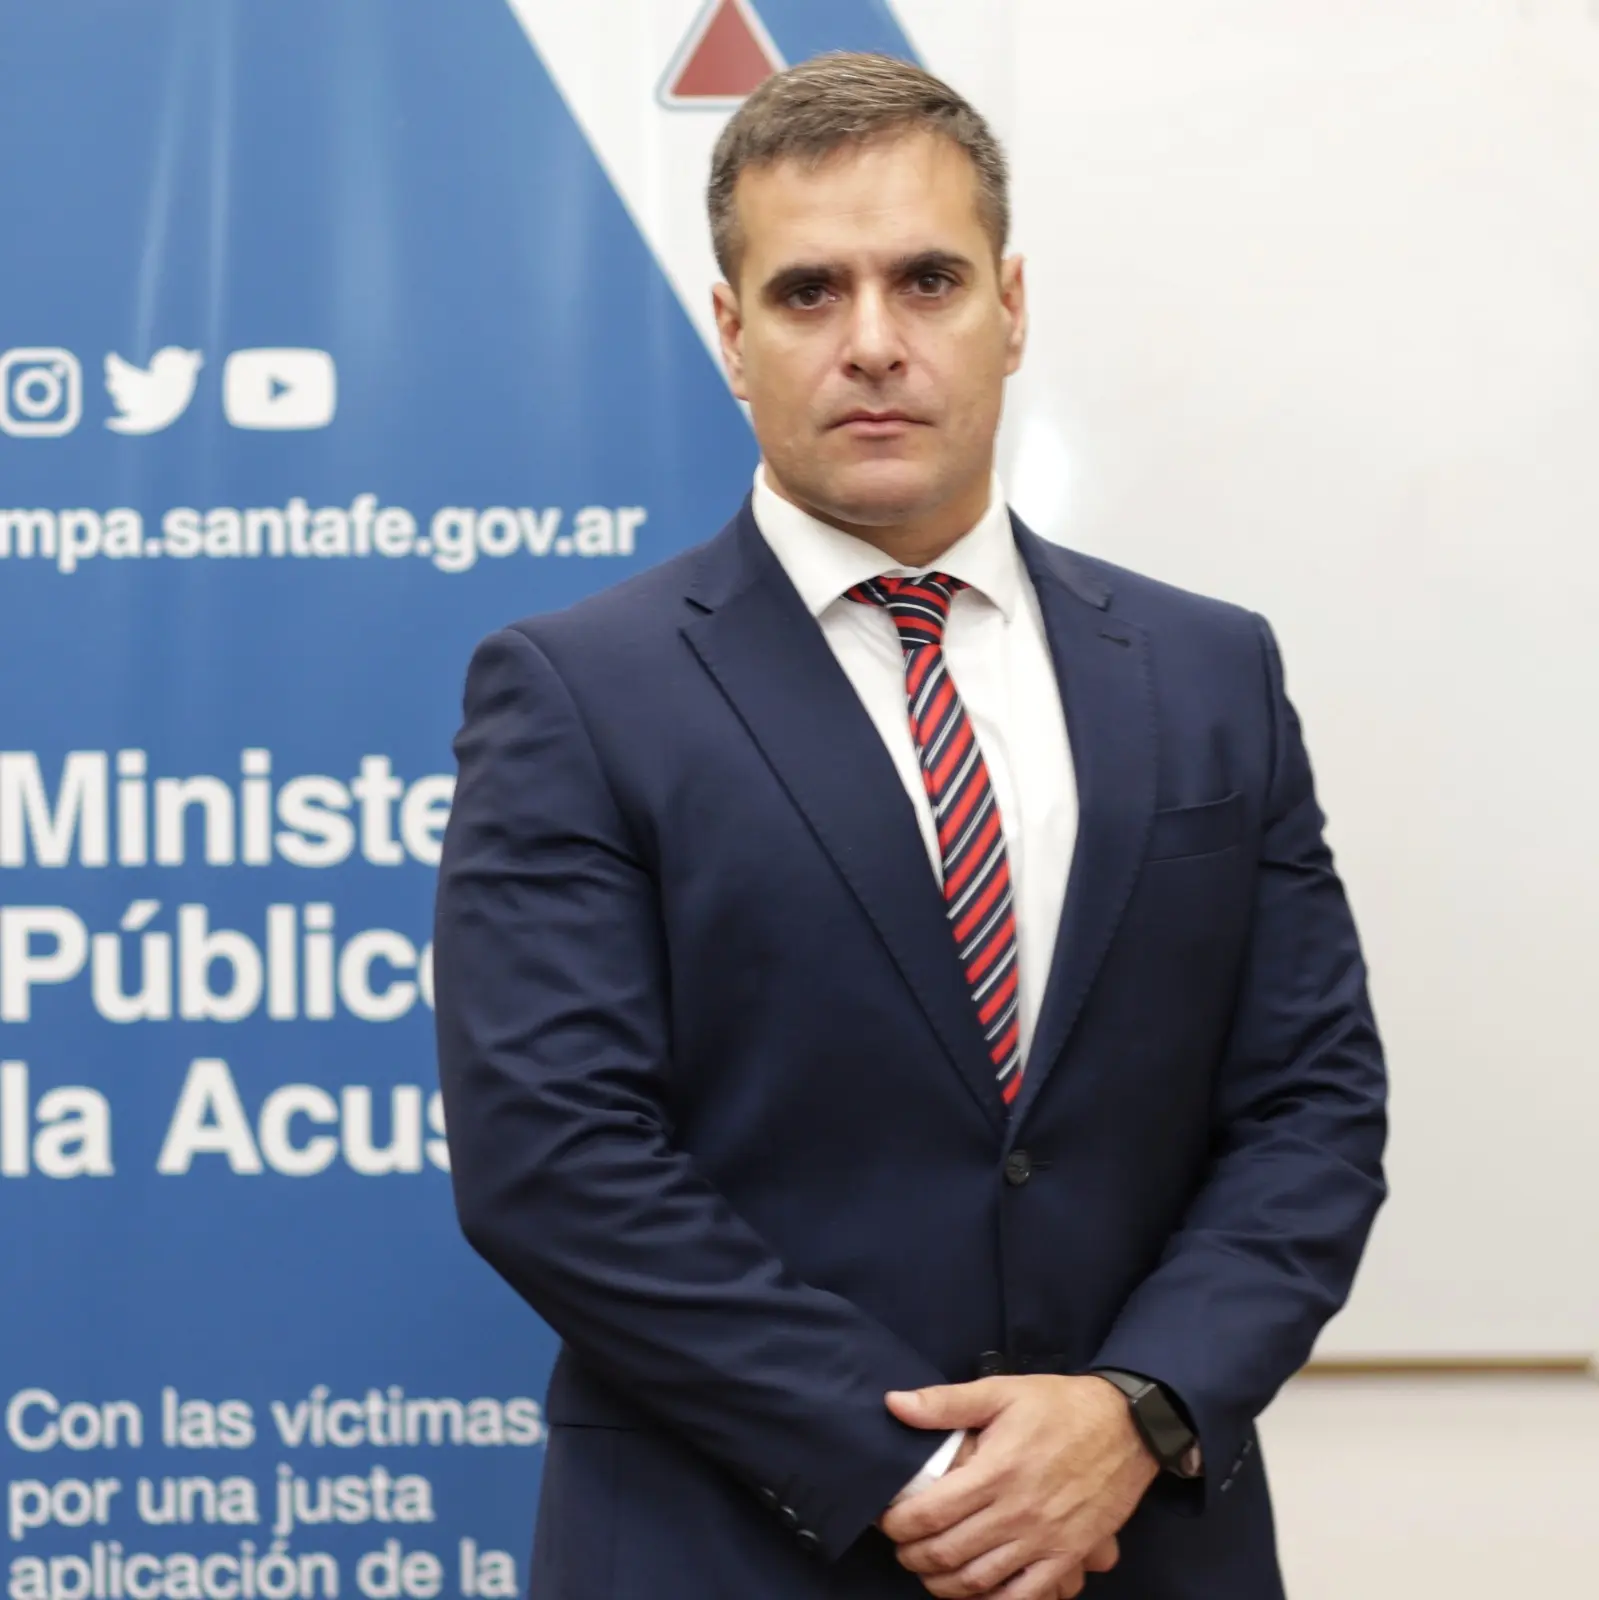 auditor fiscal ministerio publico de acusacion - Cuándo interviene el Ministerio Público Fiscal